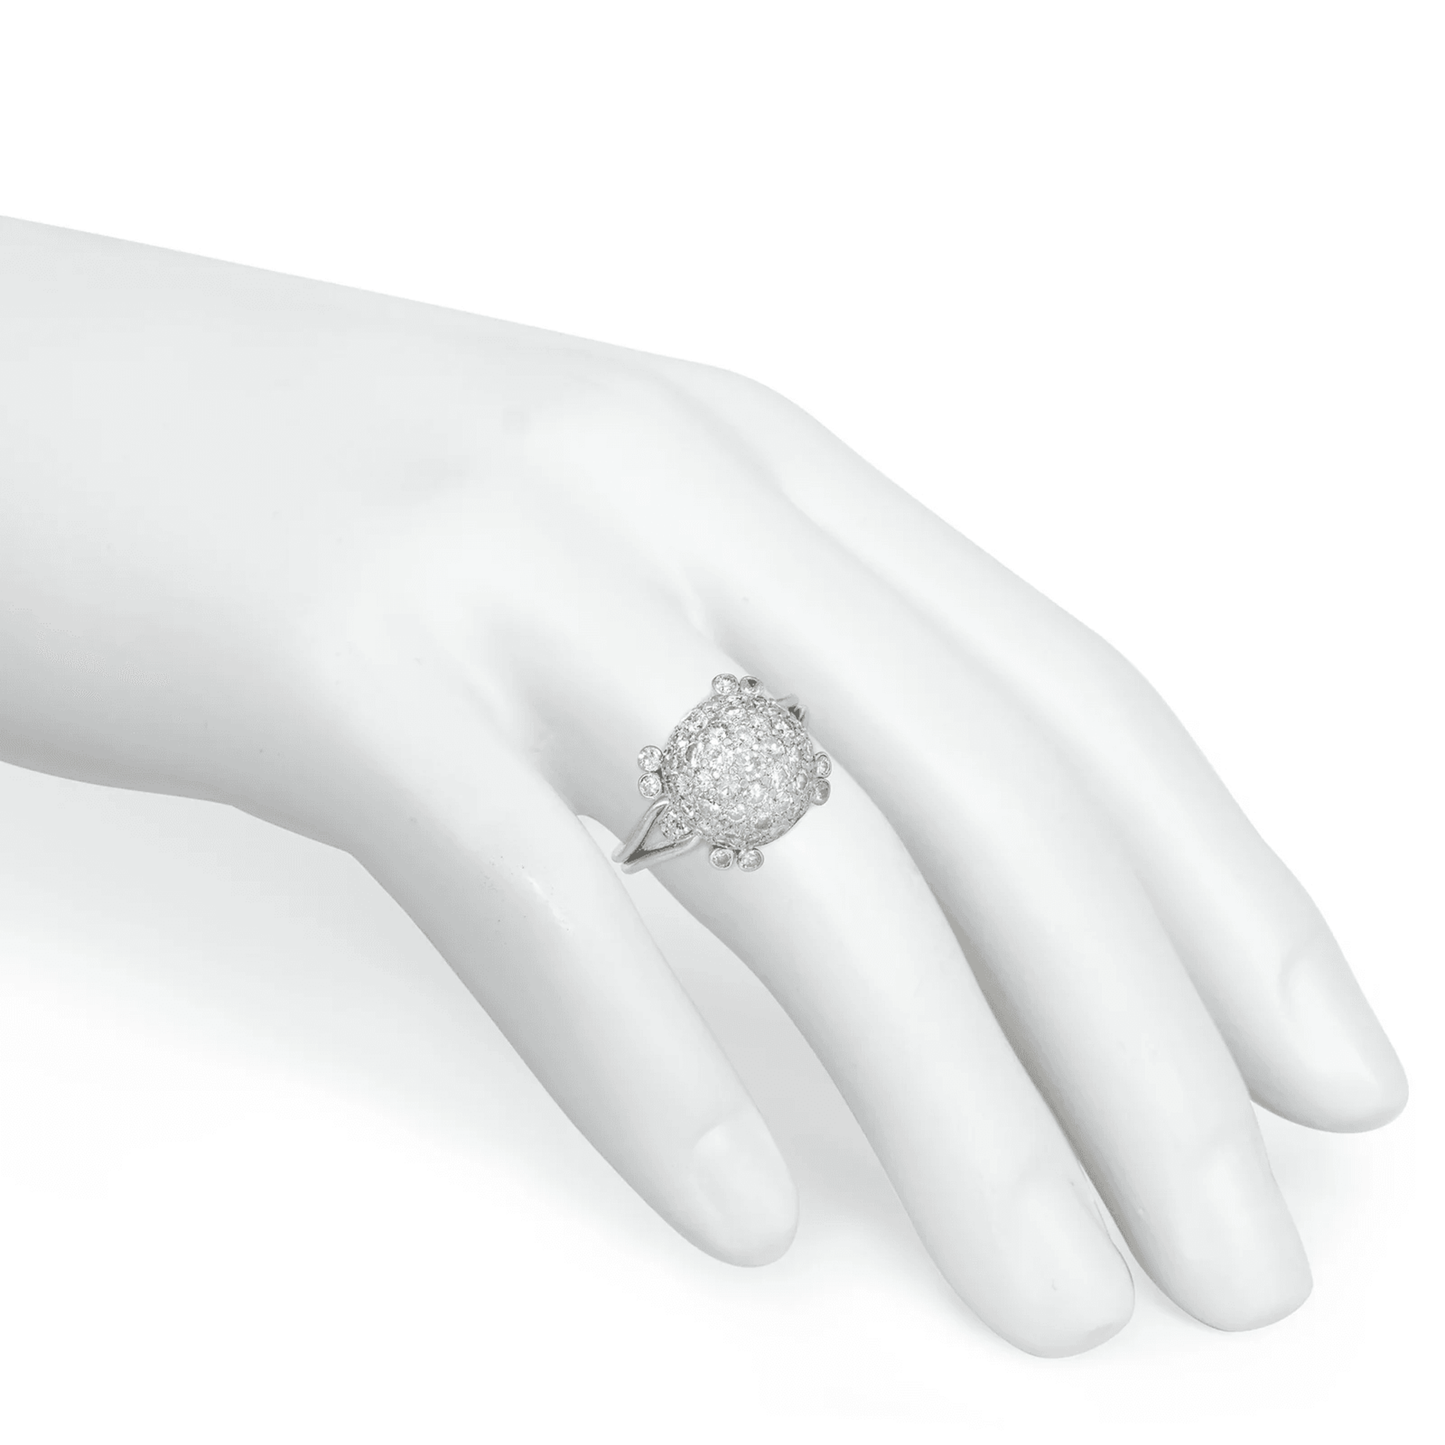 Art Deco Platinum Diamond Ring on finger